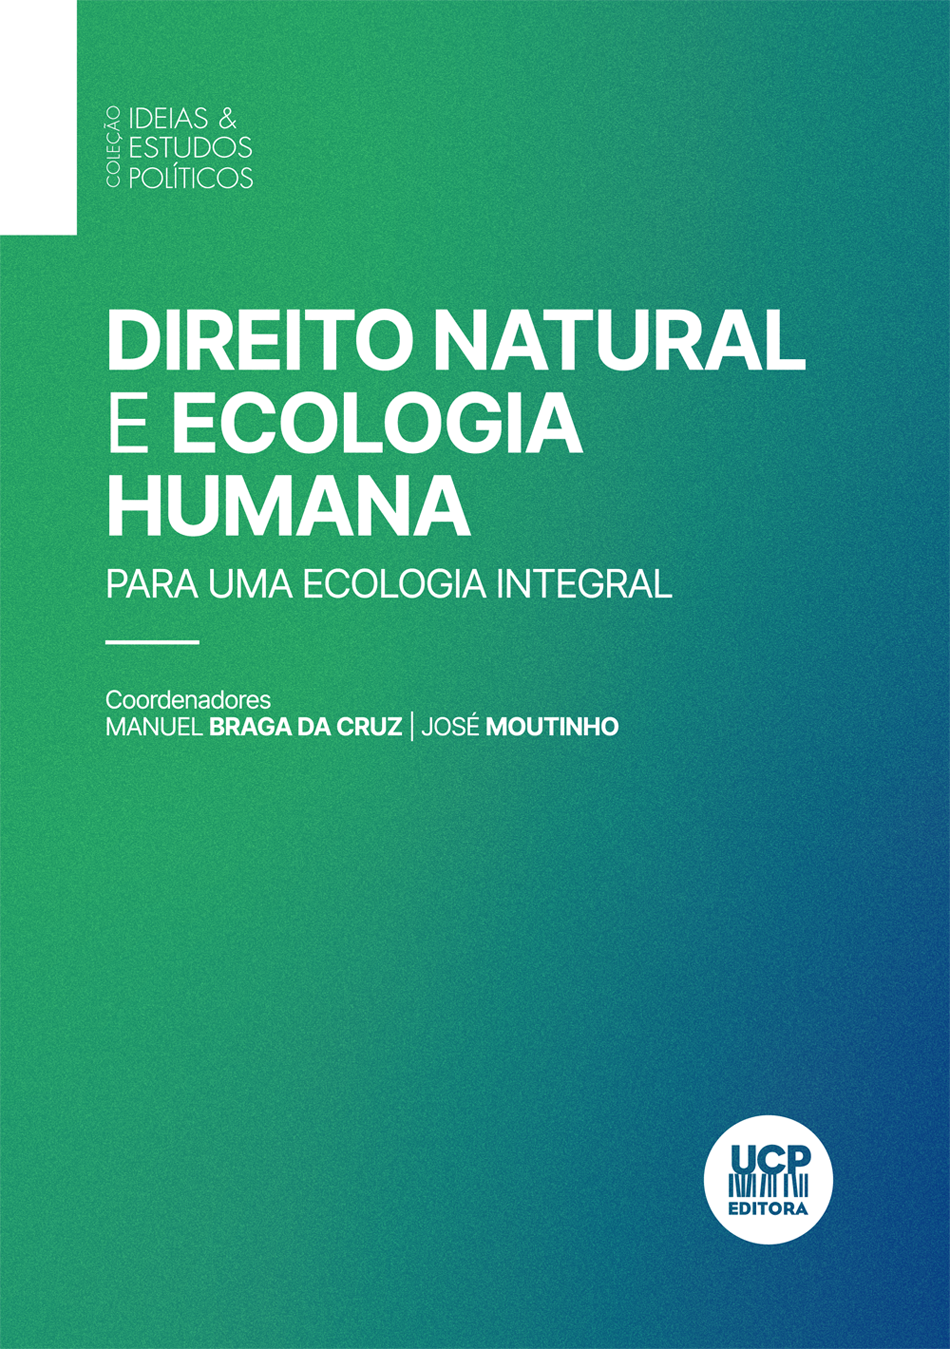 DIREITO NATURAL E ECOLOGIA HUMANA - Para uma Ecologia Integral